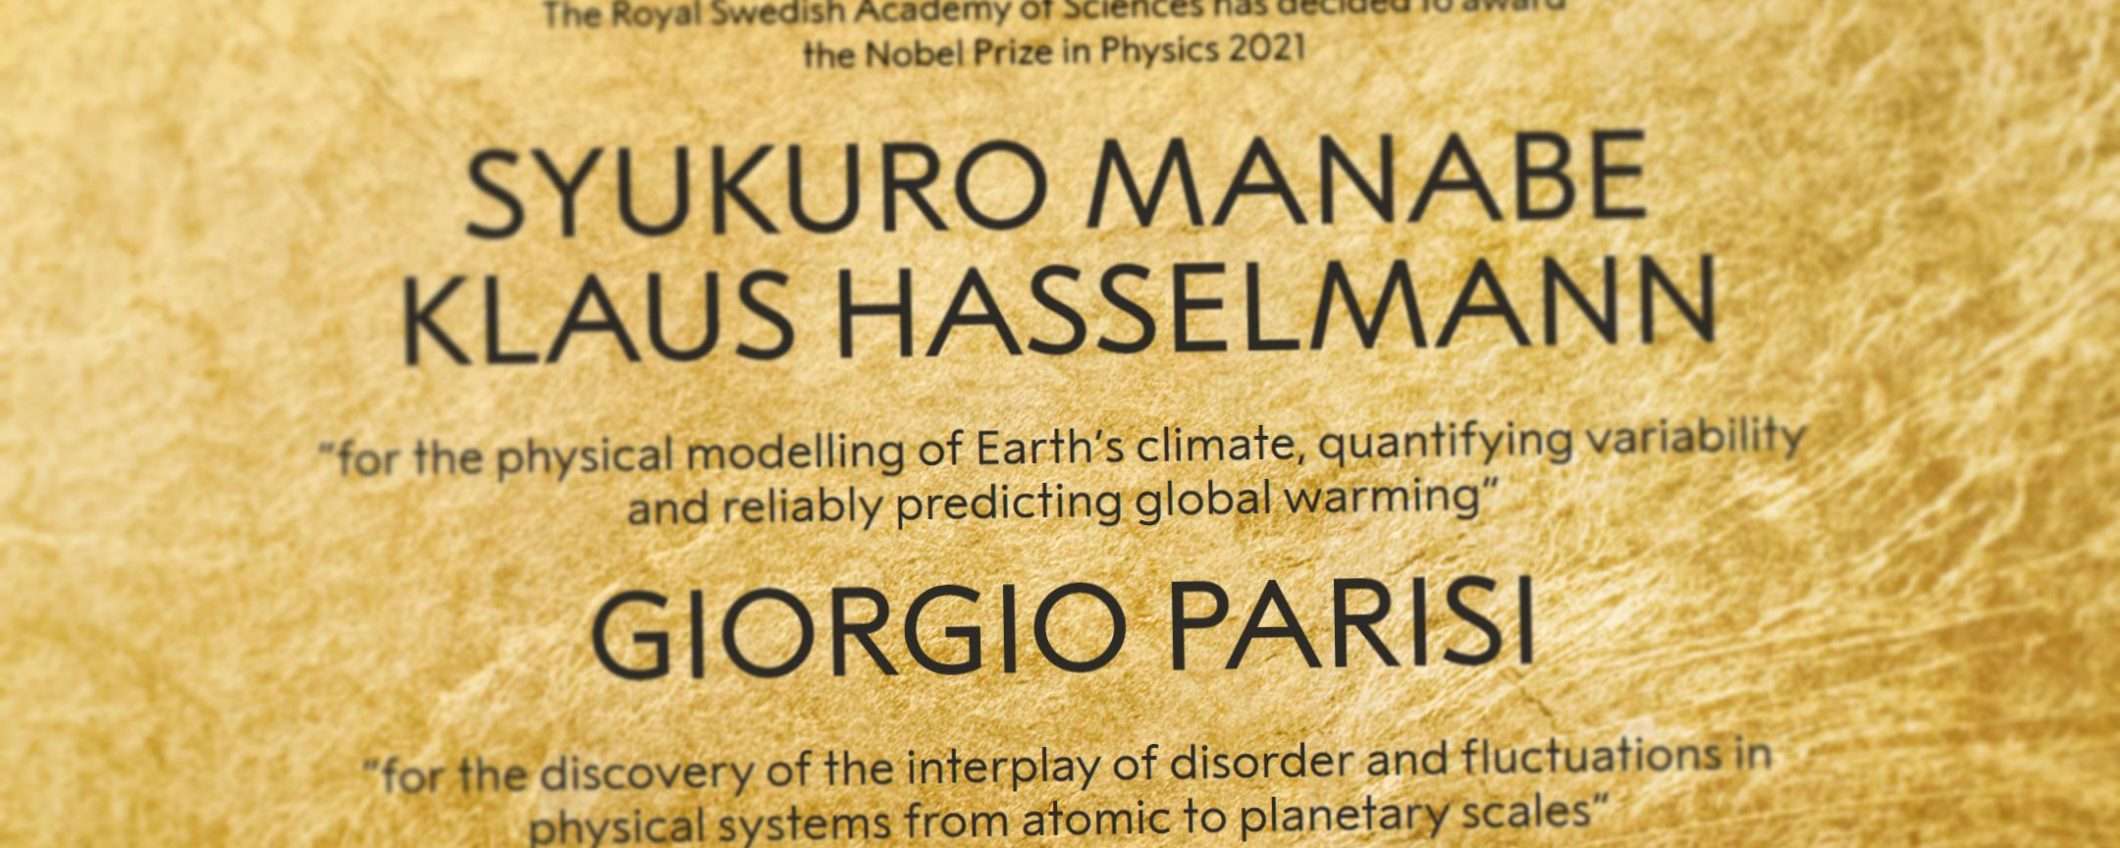 Giorgio Parisi è Premio Nobel per la Fisica 2021